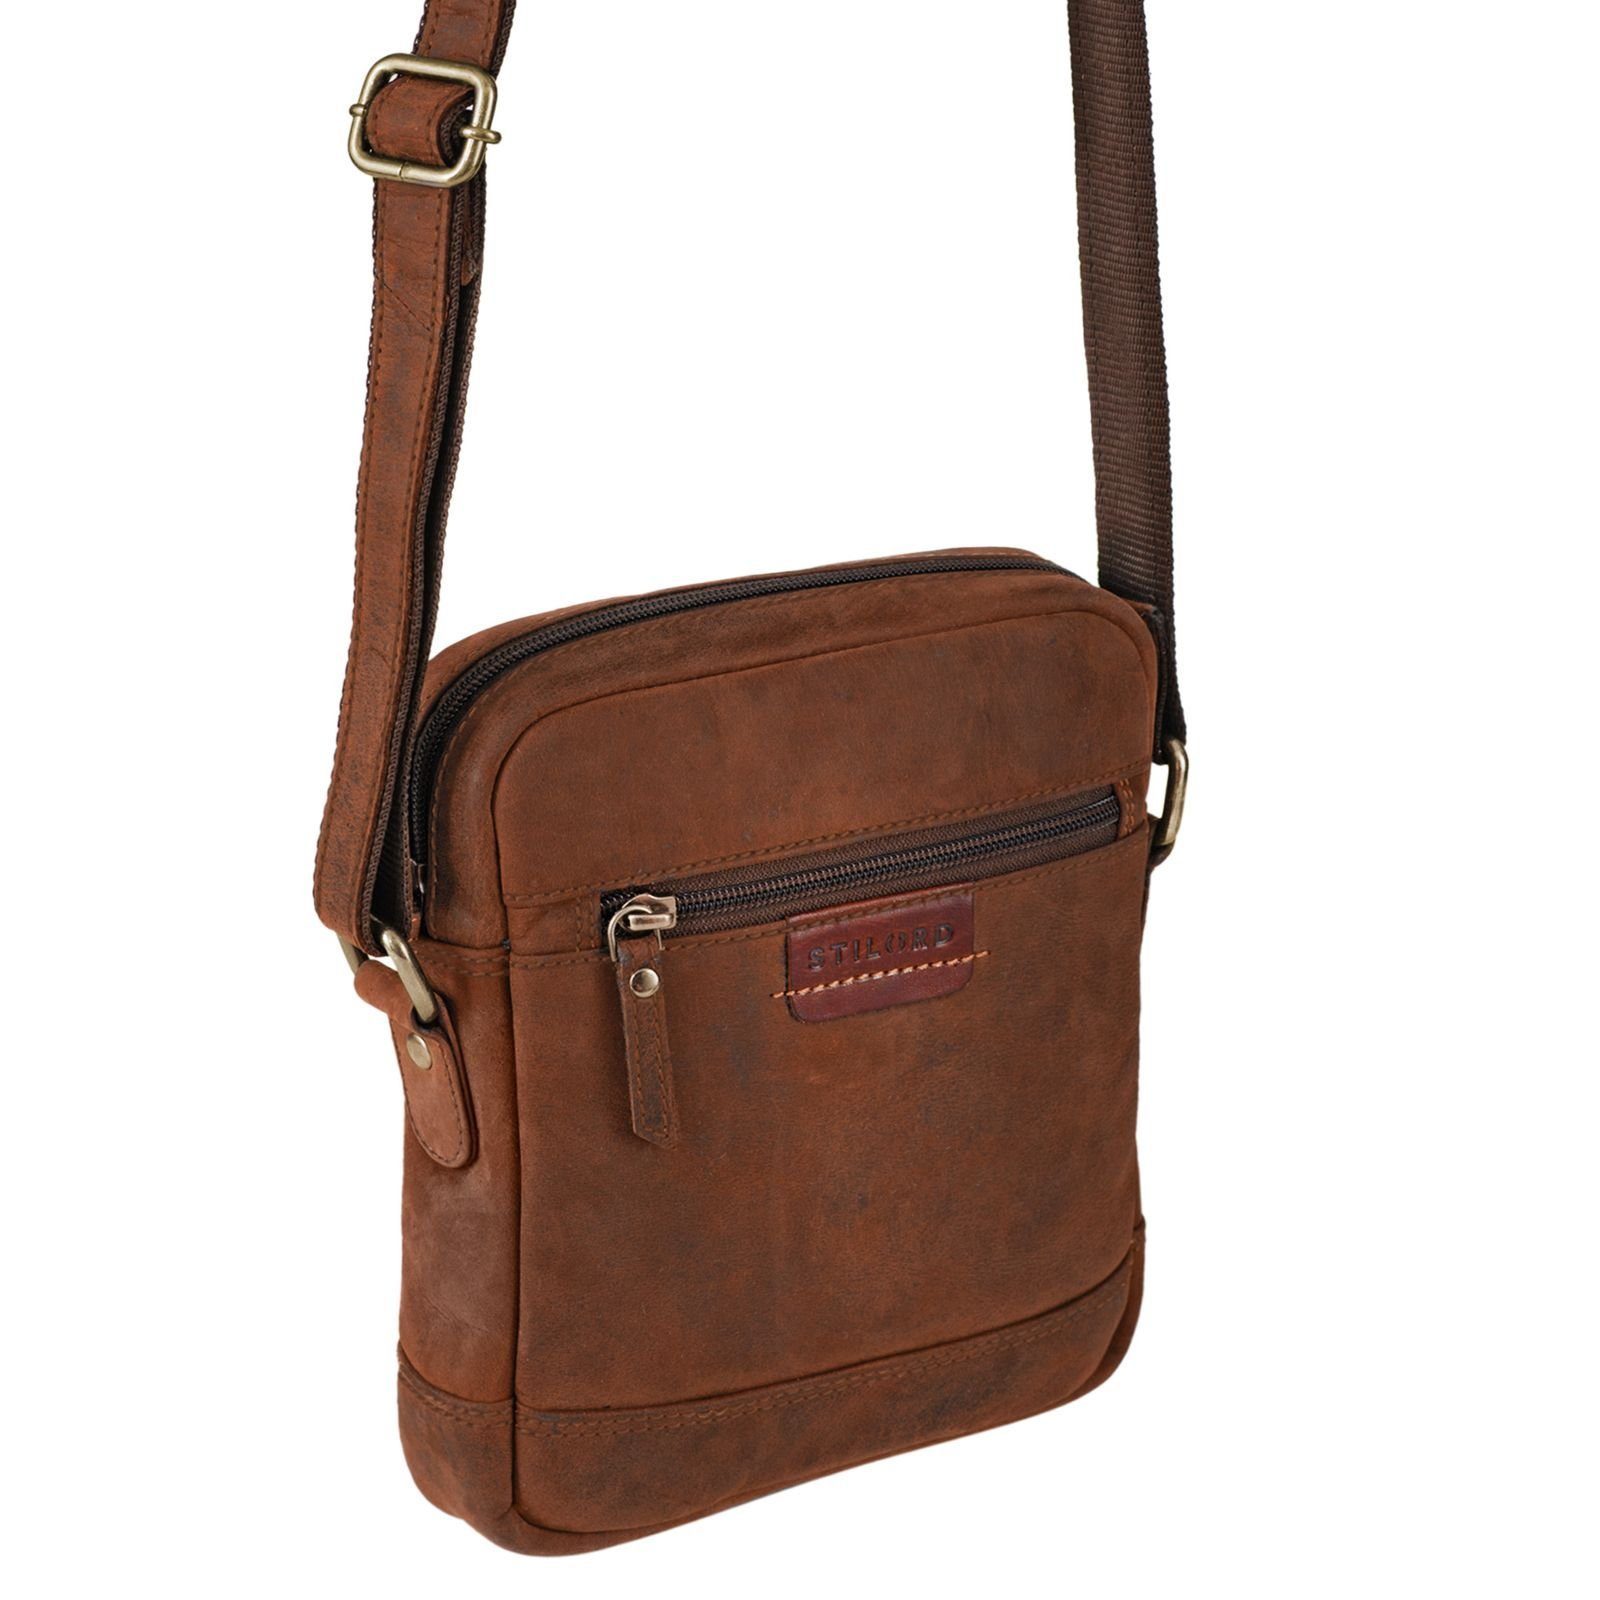 Vintage zum - STILORD braun Leder Messenger Umhängen sepia Tasche Bag "Brian"